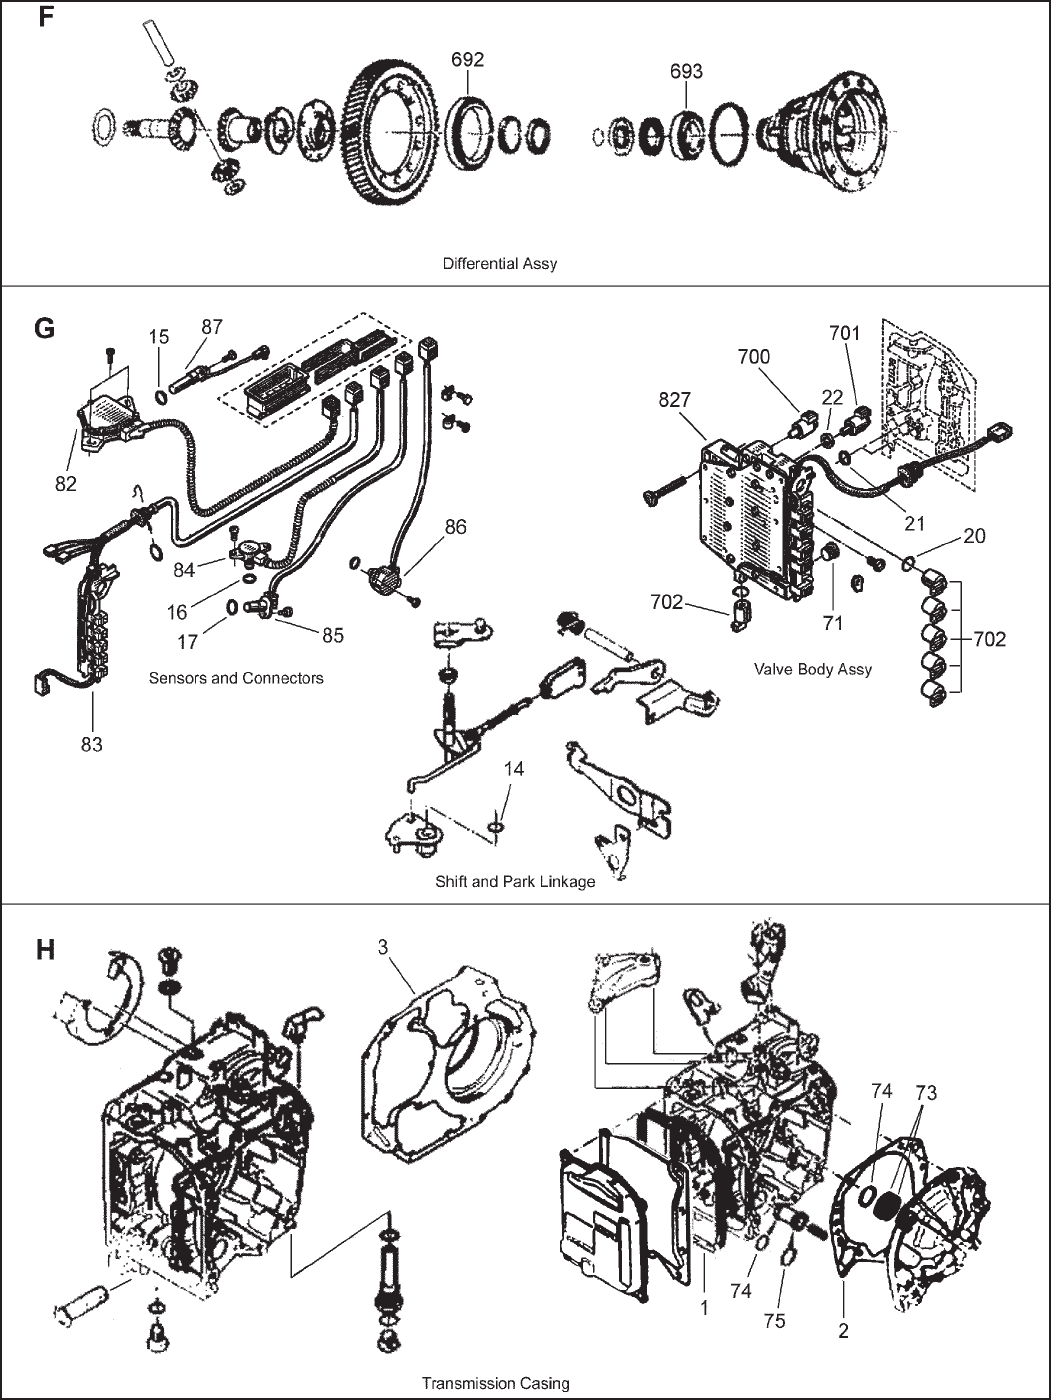 Al4 transmission rebuild manual transmission